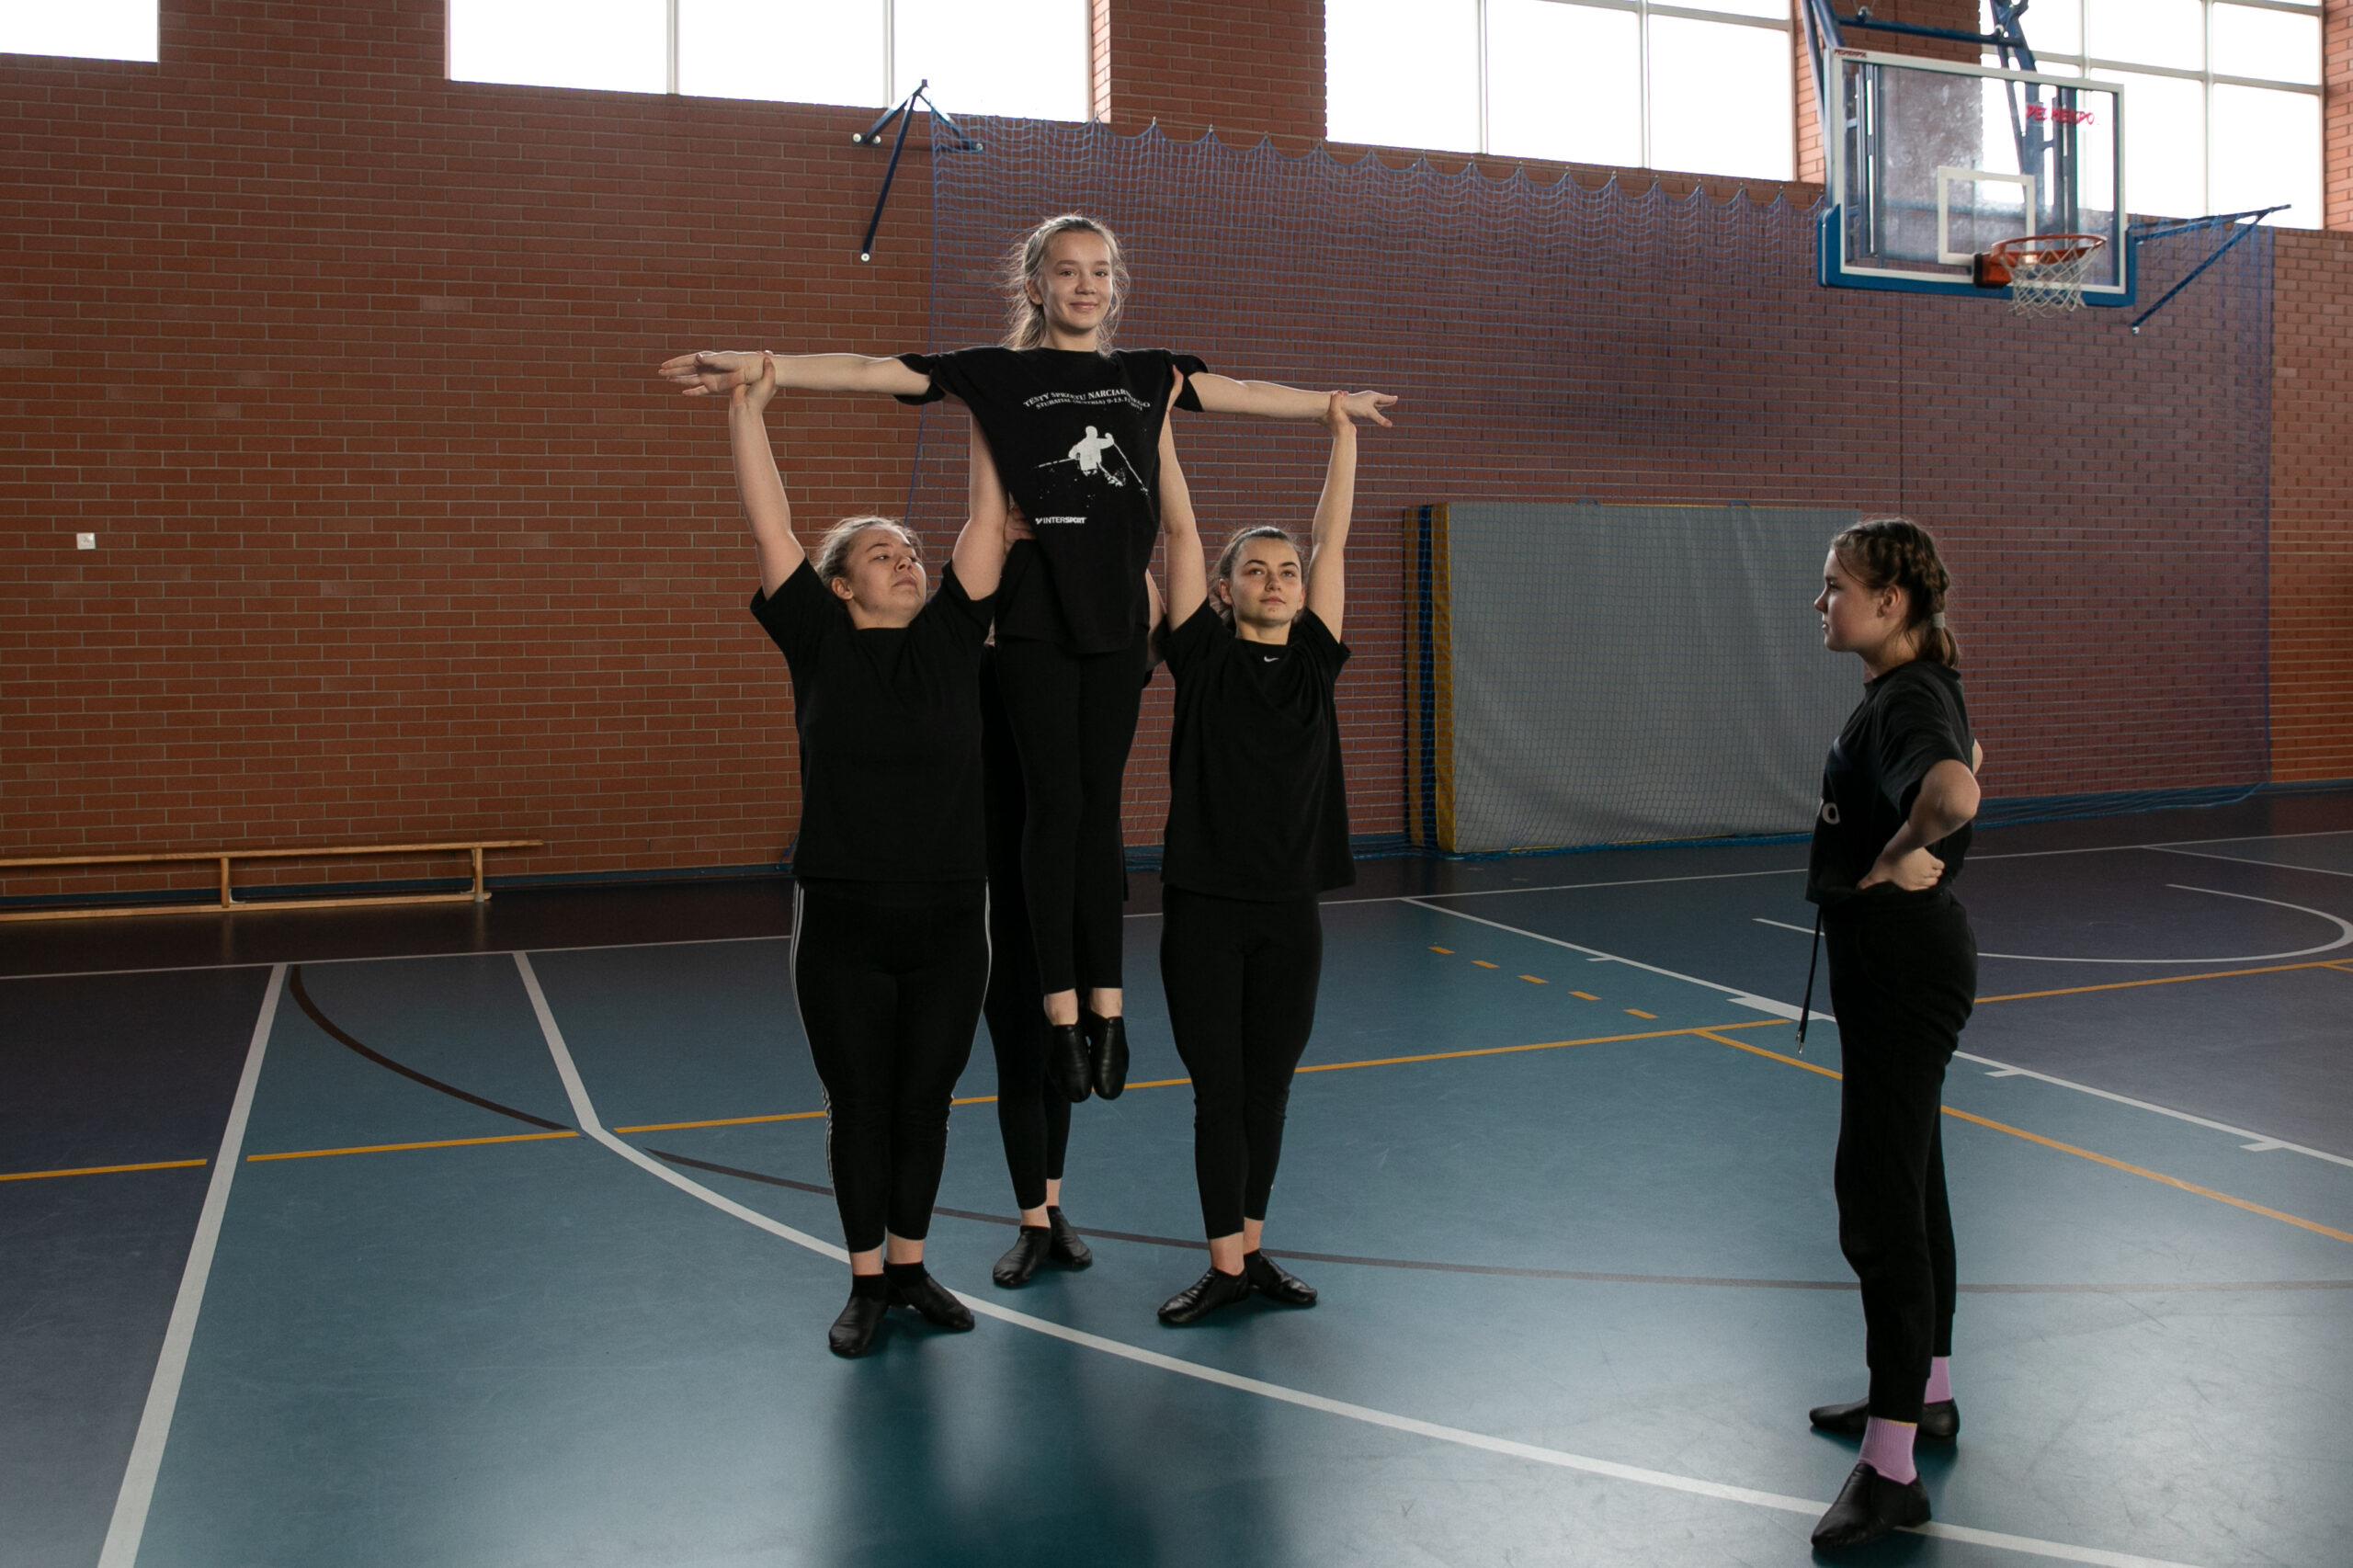 pięć dziewczyn w czarnych ubraniach wykonujące podnoszenie taneczne na hali gimnastycznej